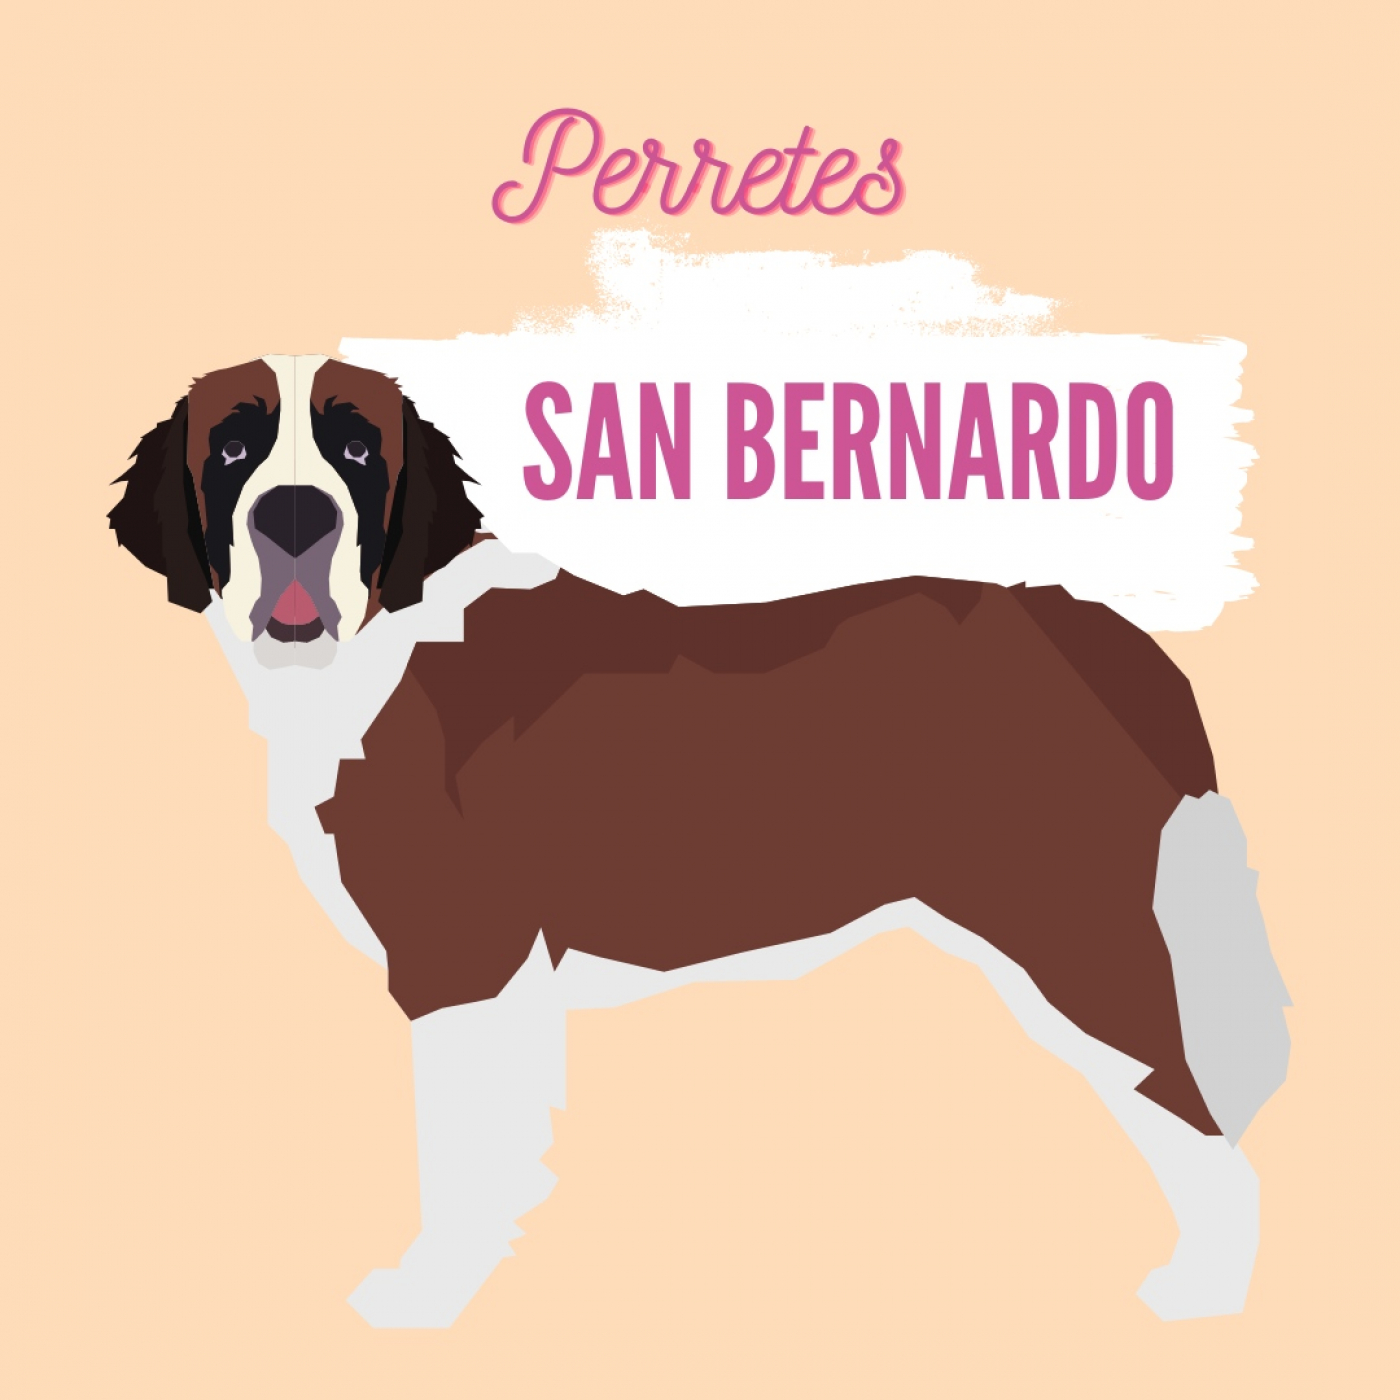 Ep50: San Bernardo